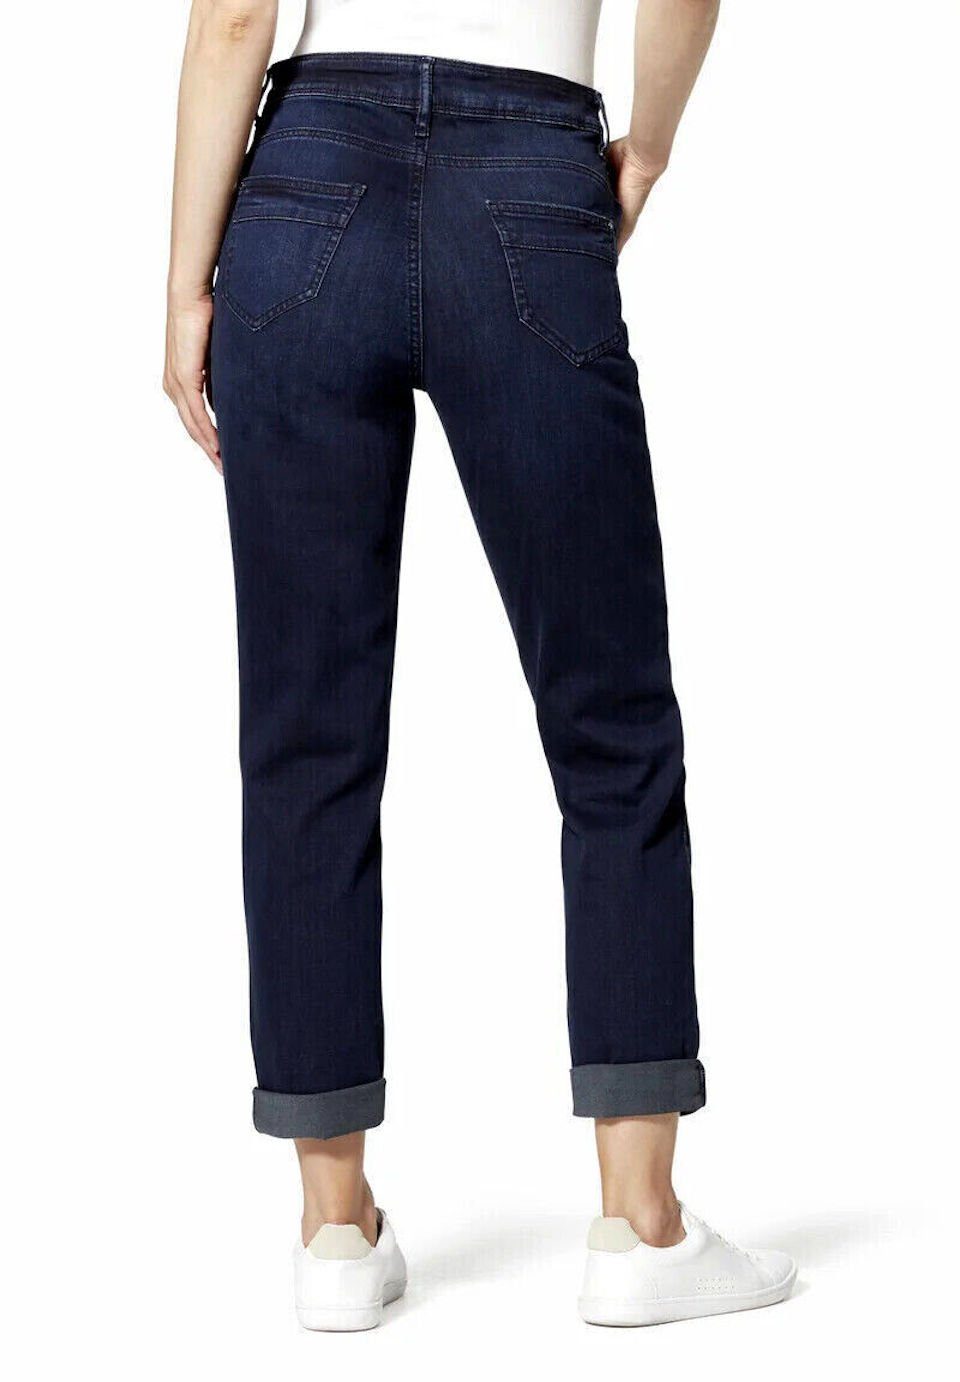 STOOKER WOMEN Boyfriend-Jeans DAVOS BOYFRIEND Blue - HOSE SLIM used JEANS FIT black